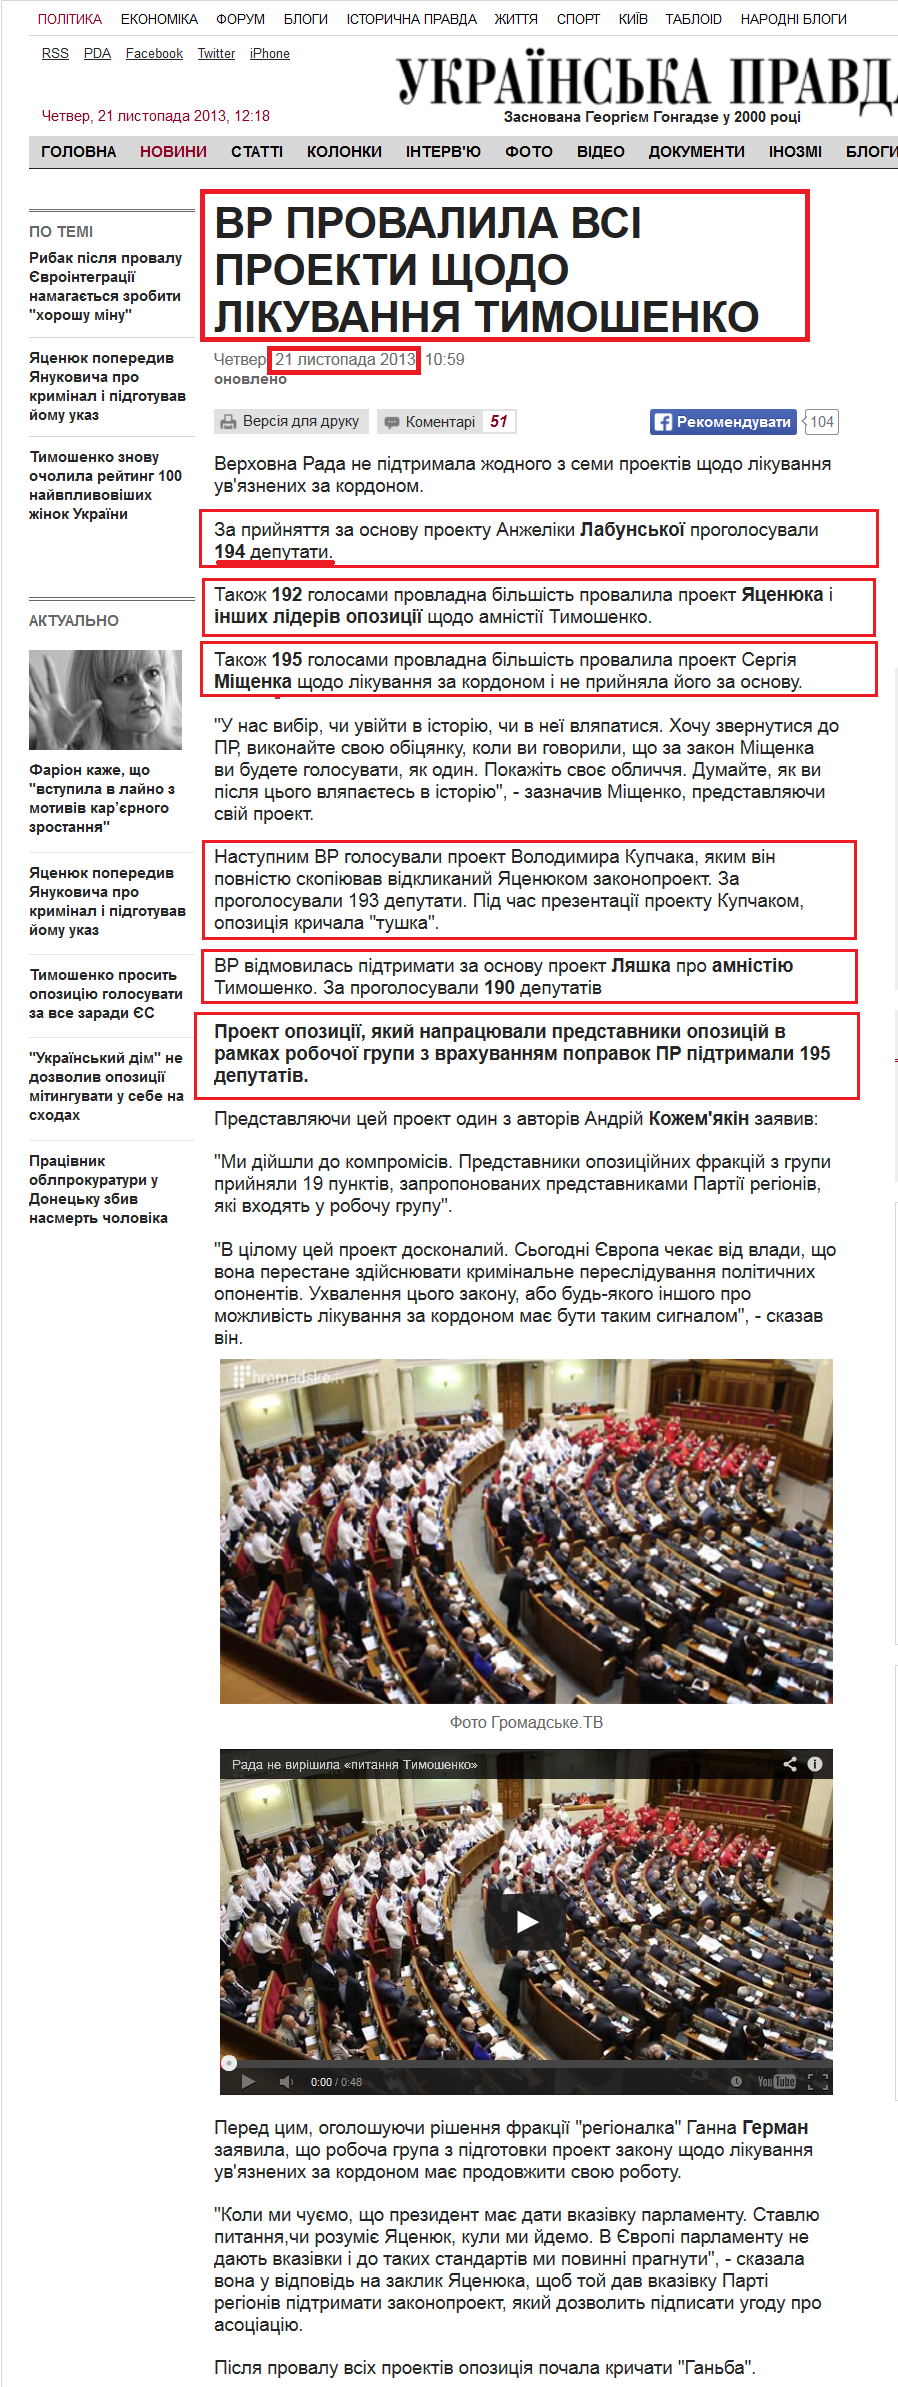 http://www.pravda.com.ua/news/2013/11/21/7002615/